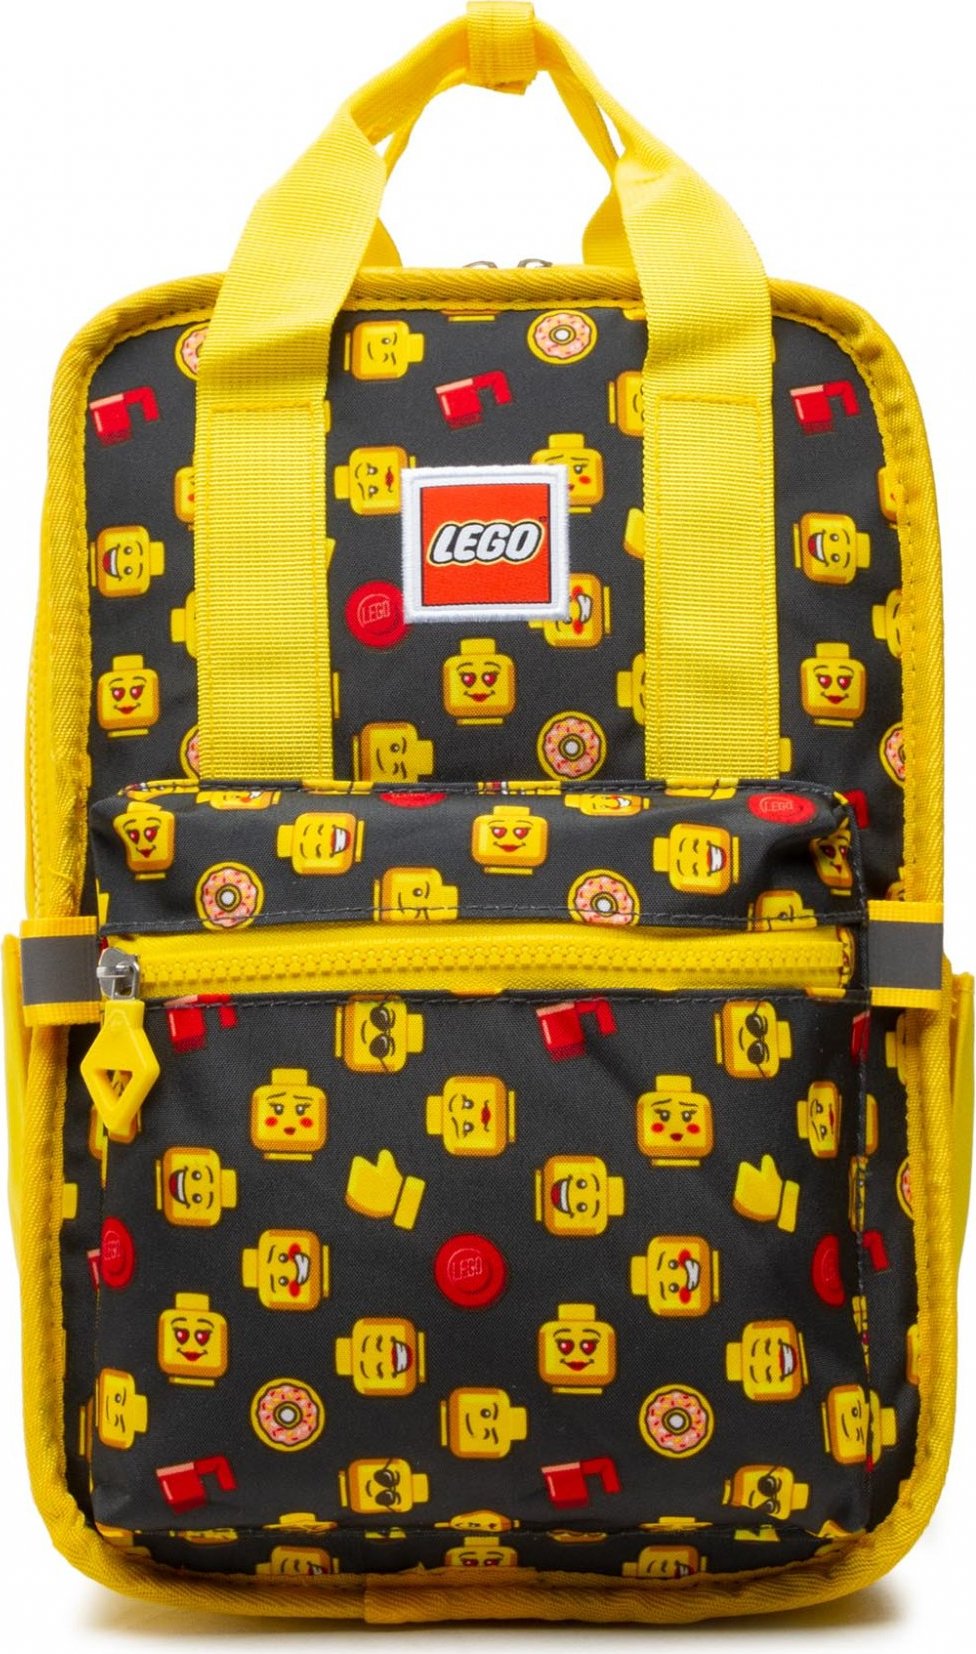 LEGO Tribini Fun Backpack Small 20127-1934